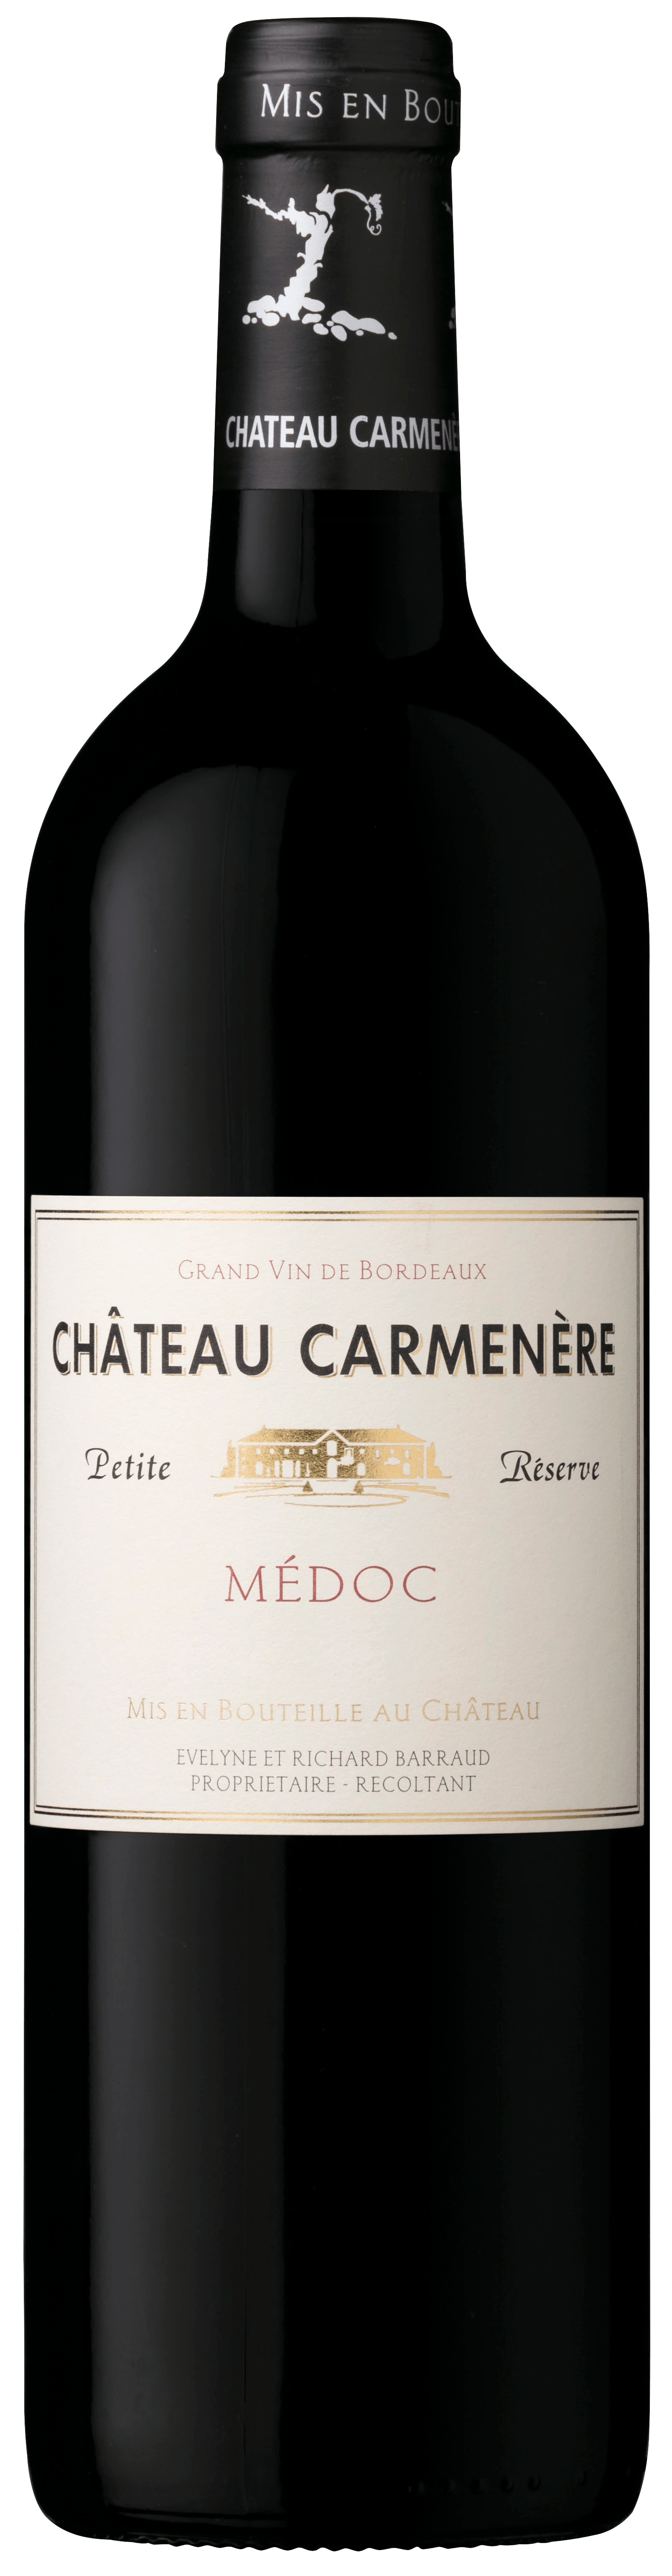 Château Carmenère - Petite réserve 2019 - Médoc